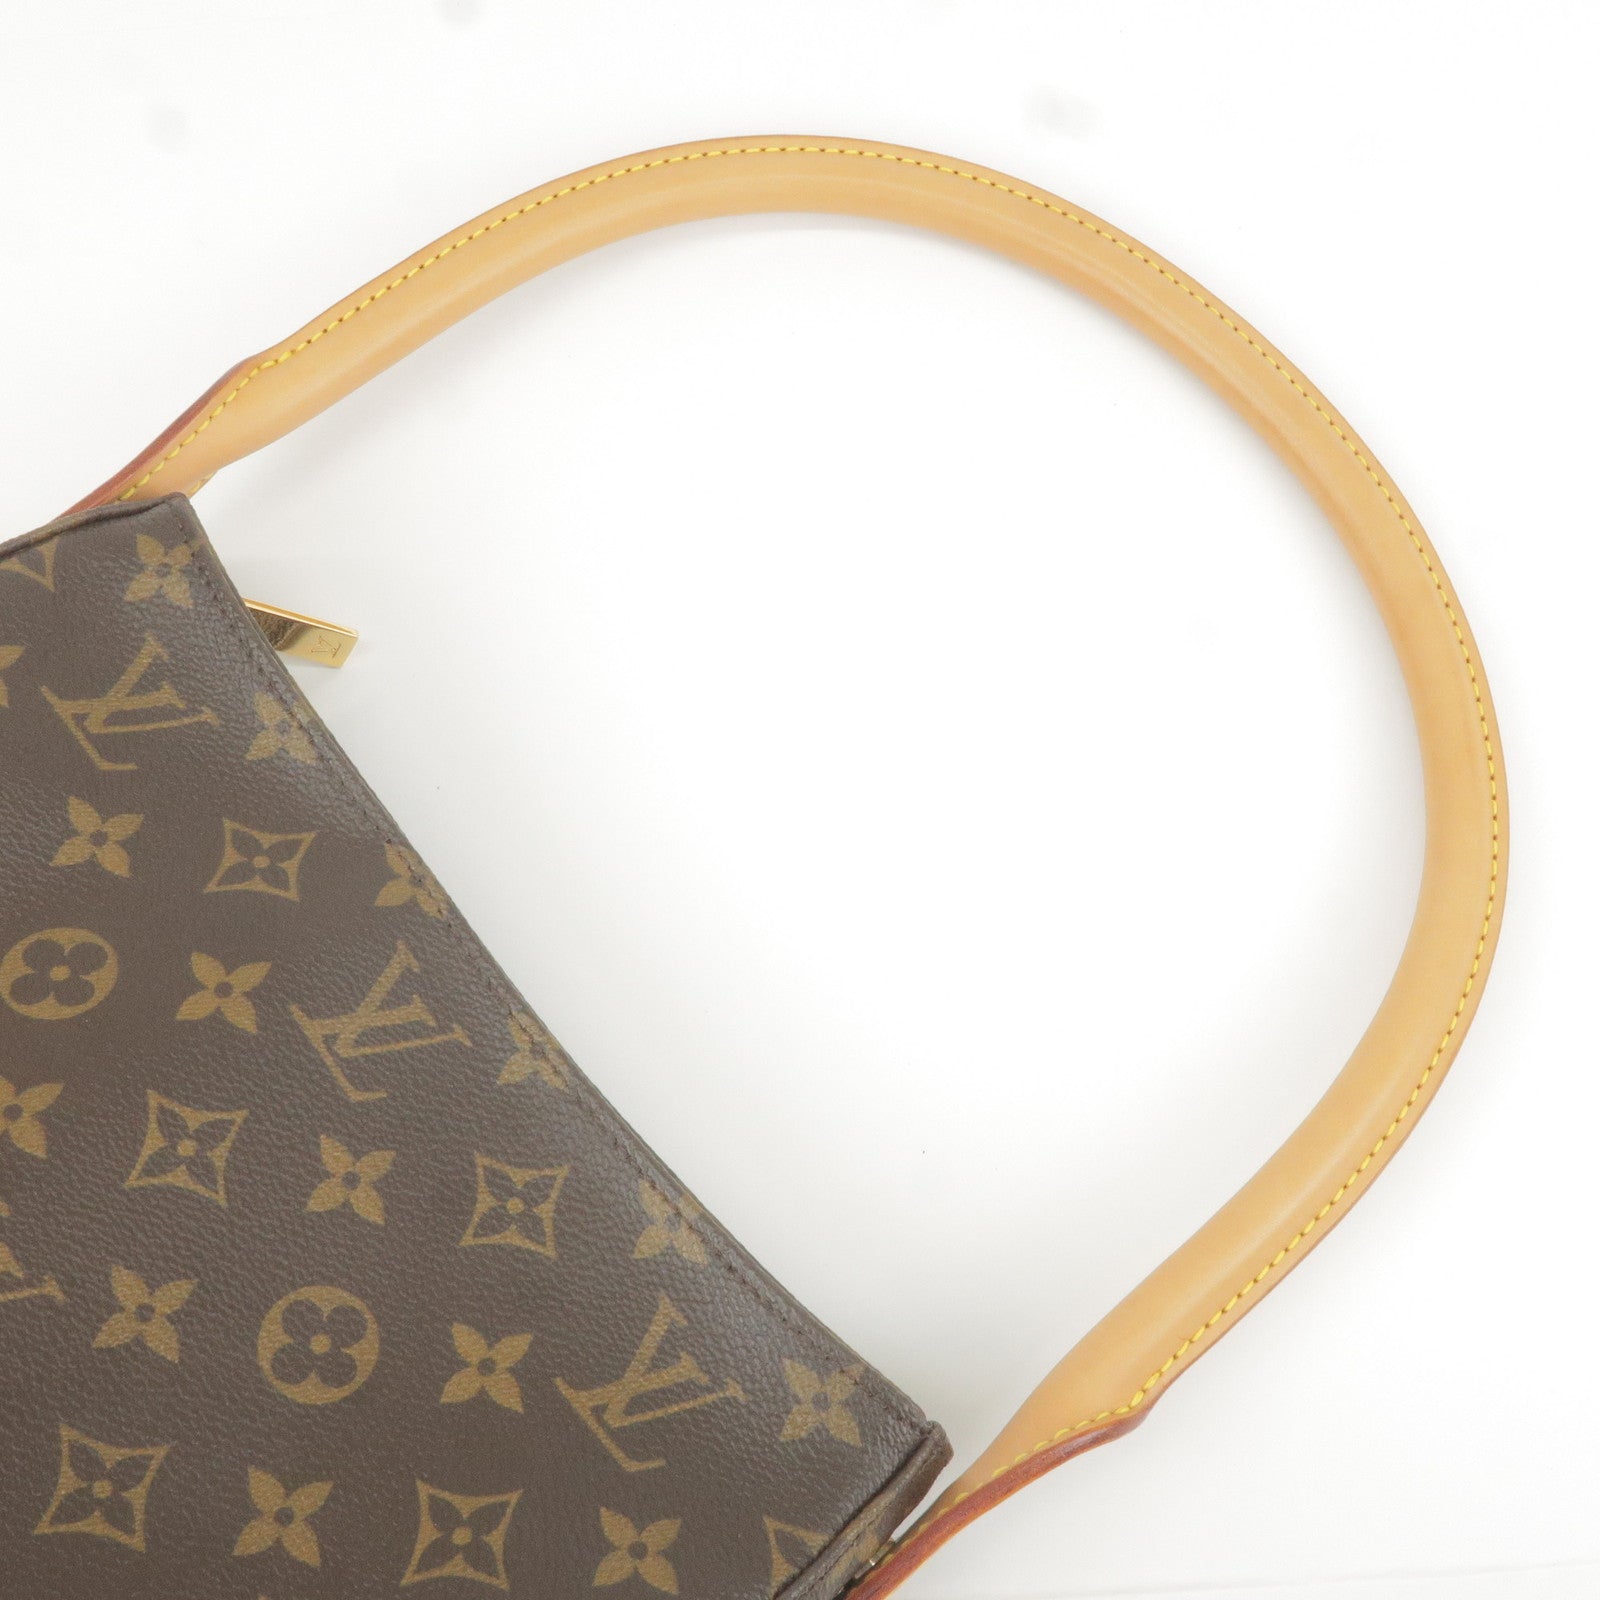 Louis Vuitton 2009 pre-owned Monogram Sologne Shoulder Bag - Farfetch